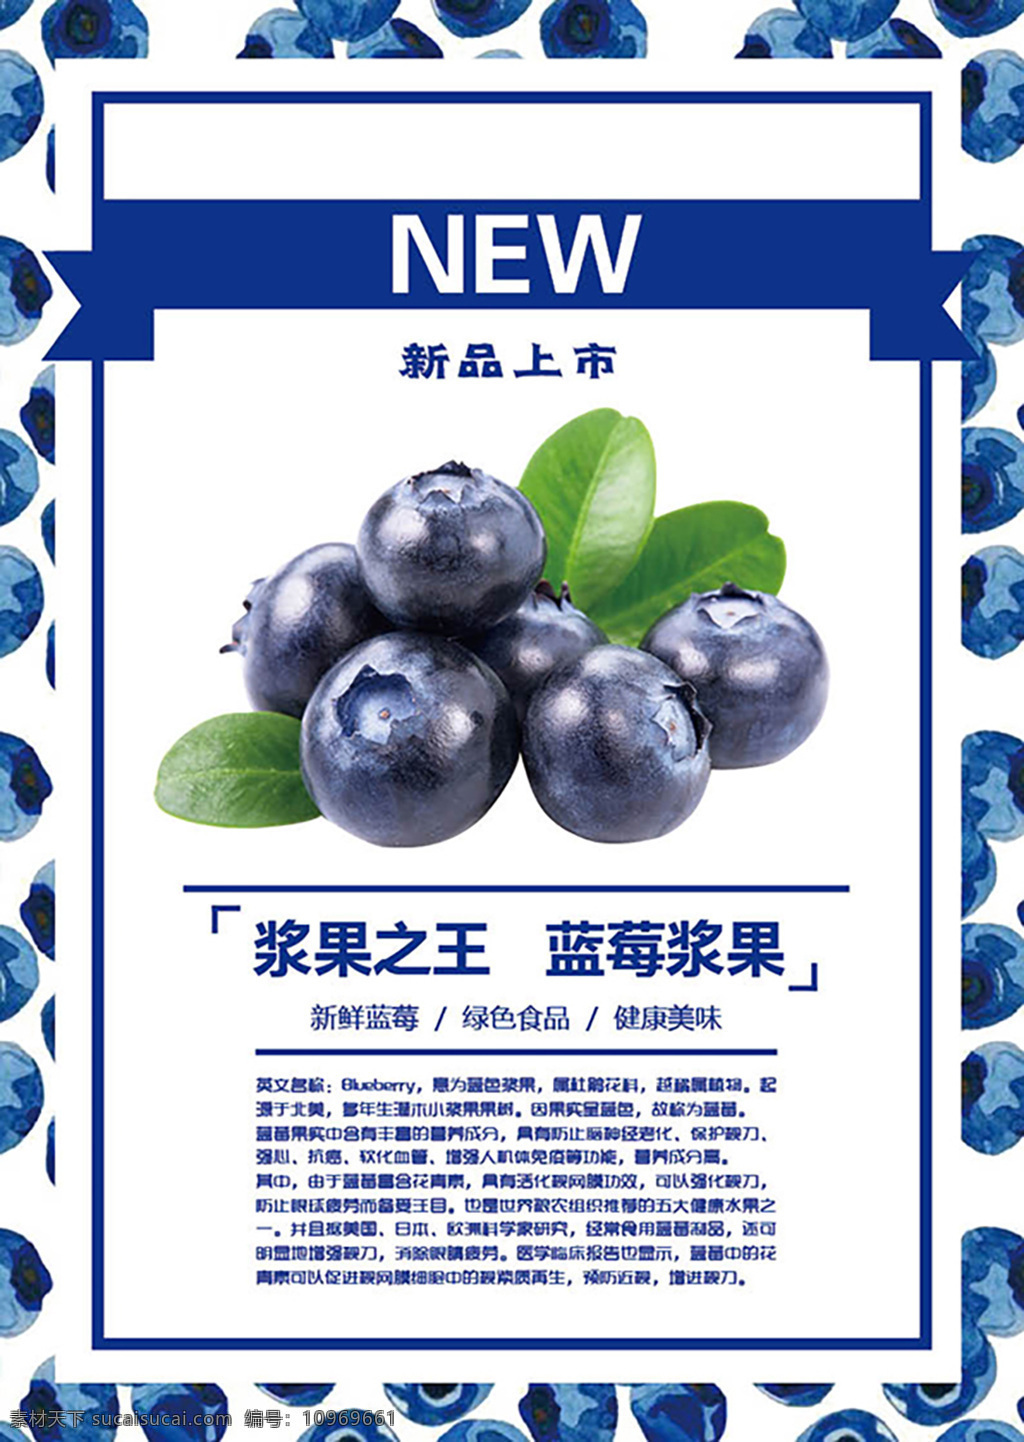 蓝莓 新品上市 海报 食品 彩页 蓝莓宣传 蓝莓新品